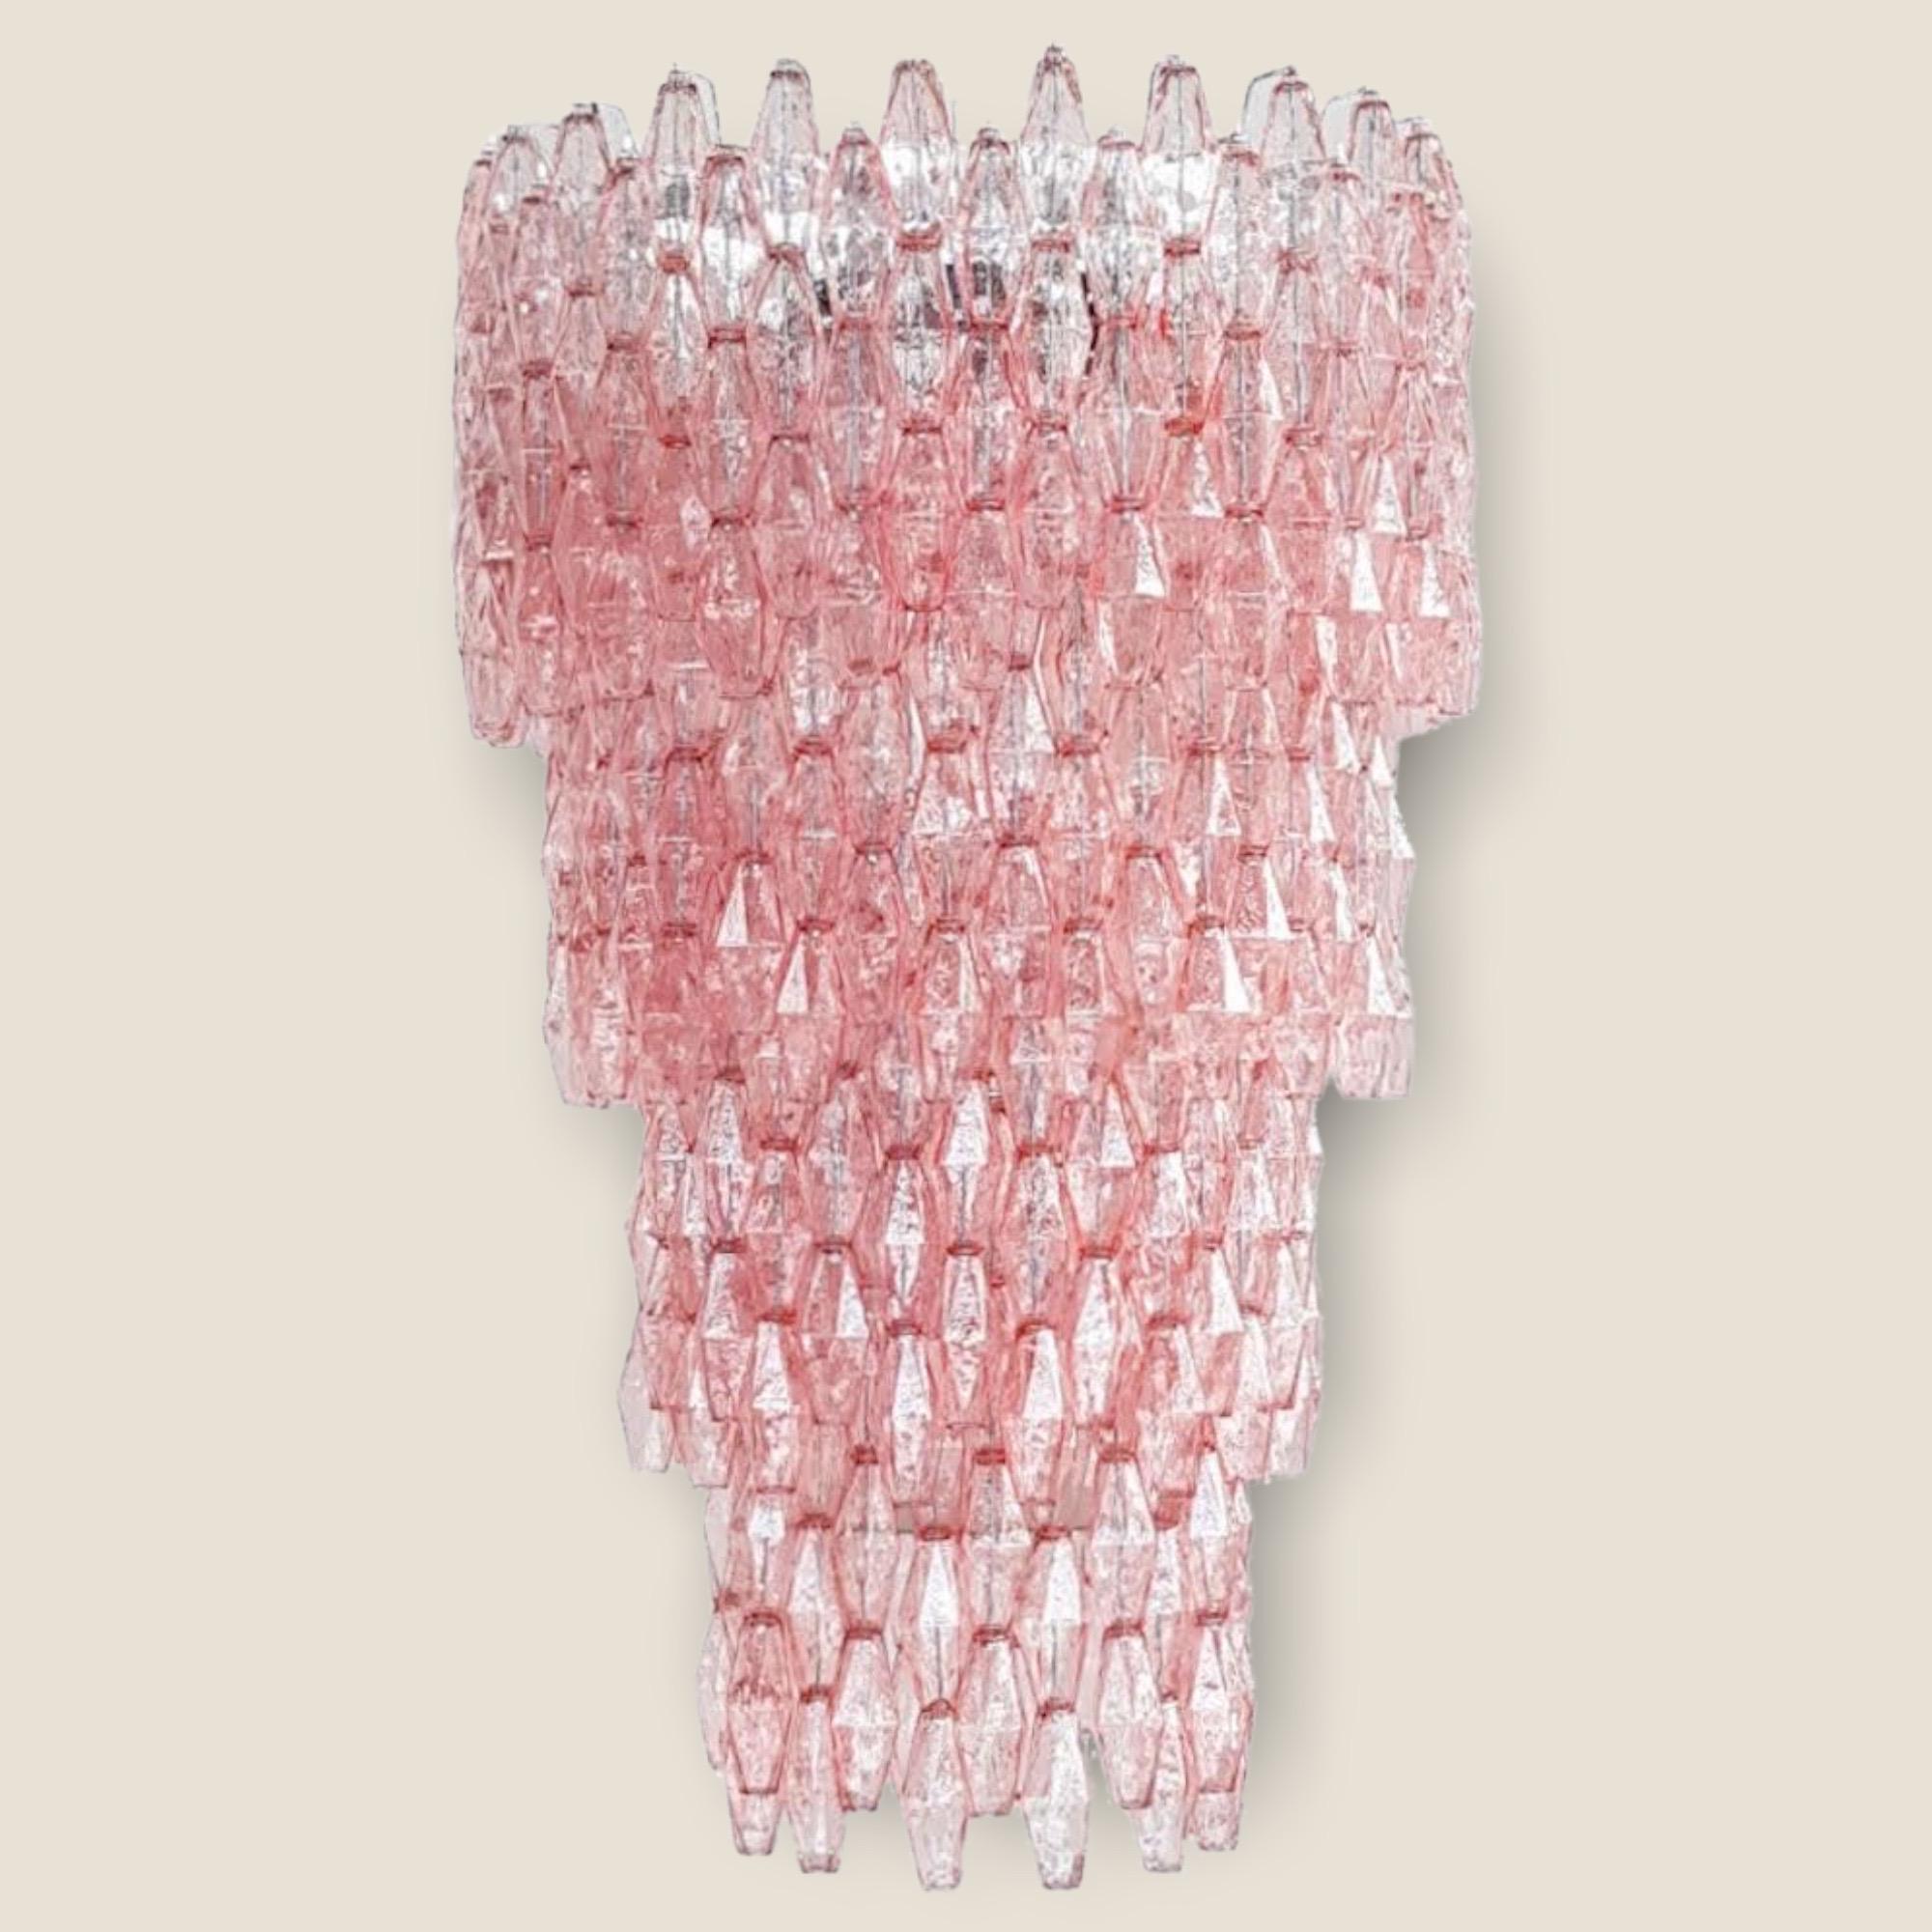 Massive Pink Poliedri Murano Chandelier For Sale 5